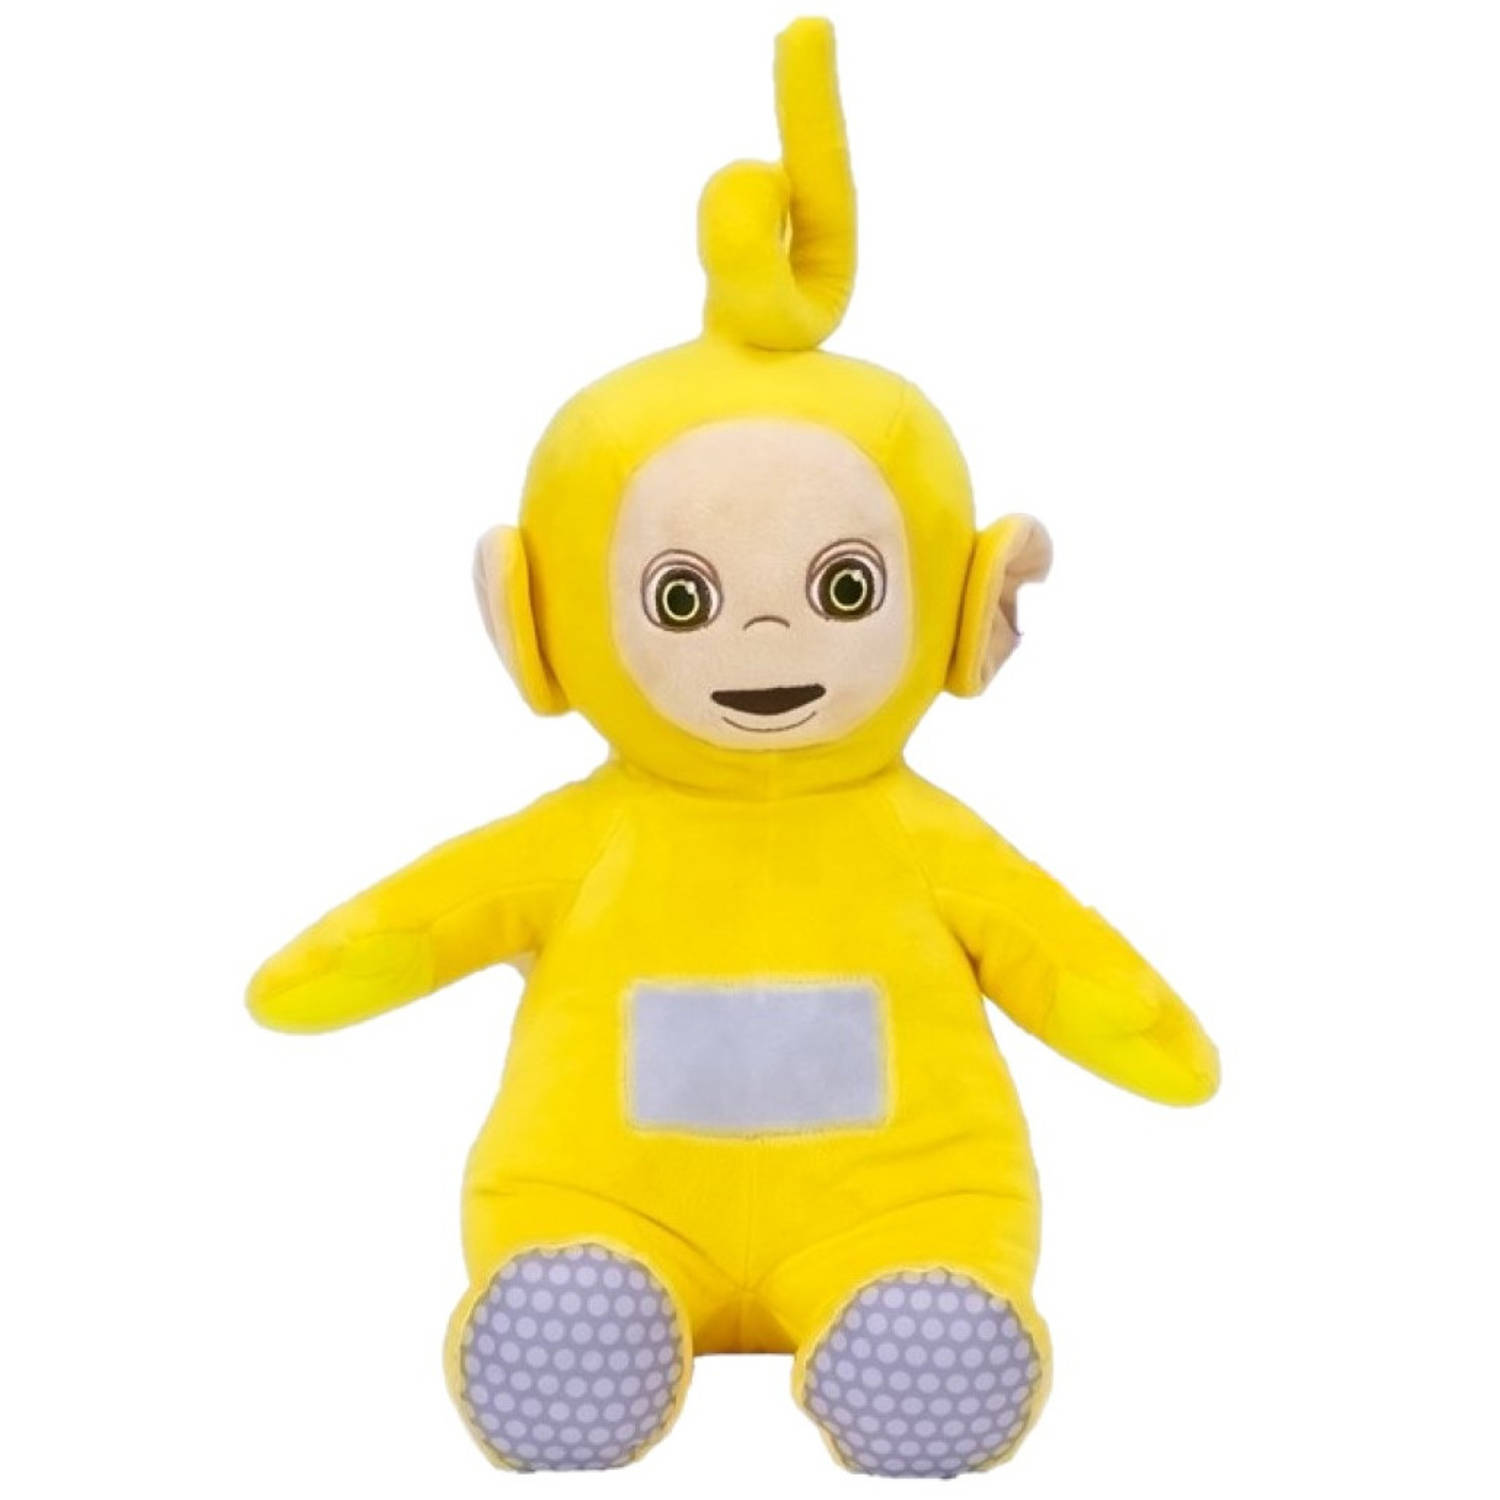 Pluche Teletubbies speelgoed knuffel Laa Laa geel 50 cm - Knuffelpop